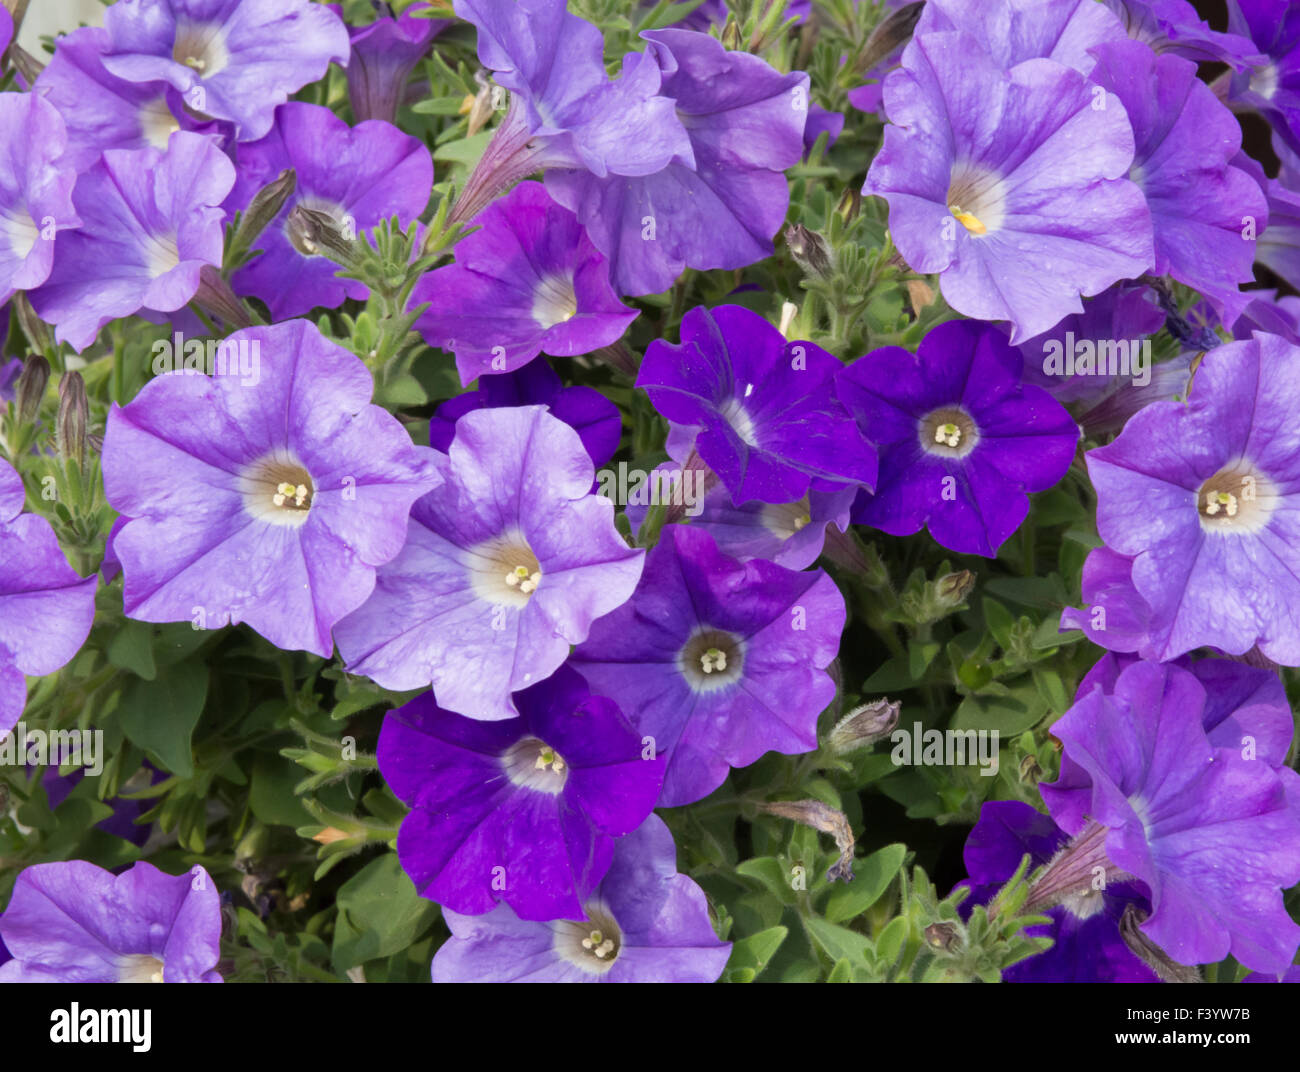 Purple petunias Stock Photo